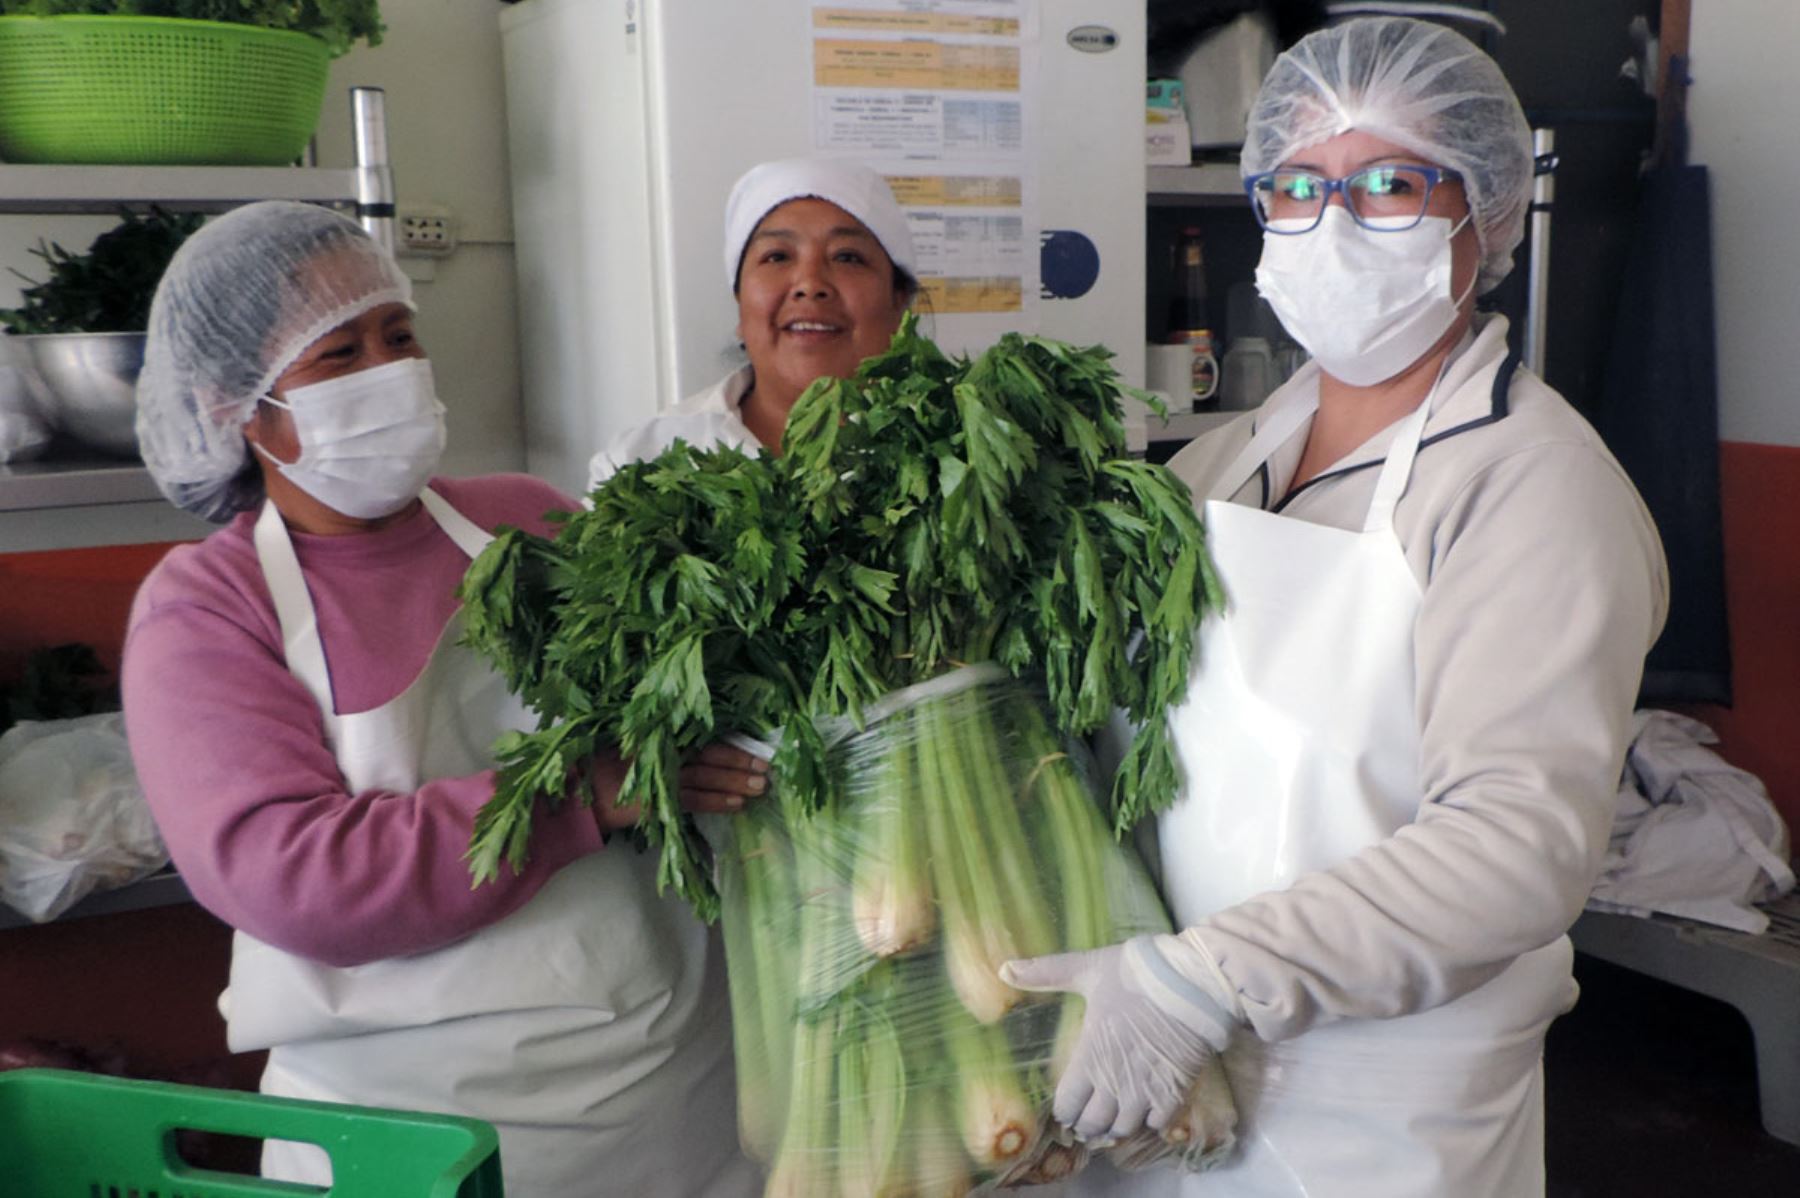 Nuevos proveedores de Qali Warma en Junín se dedican a la agricultura familiar